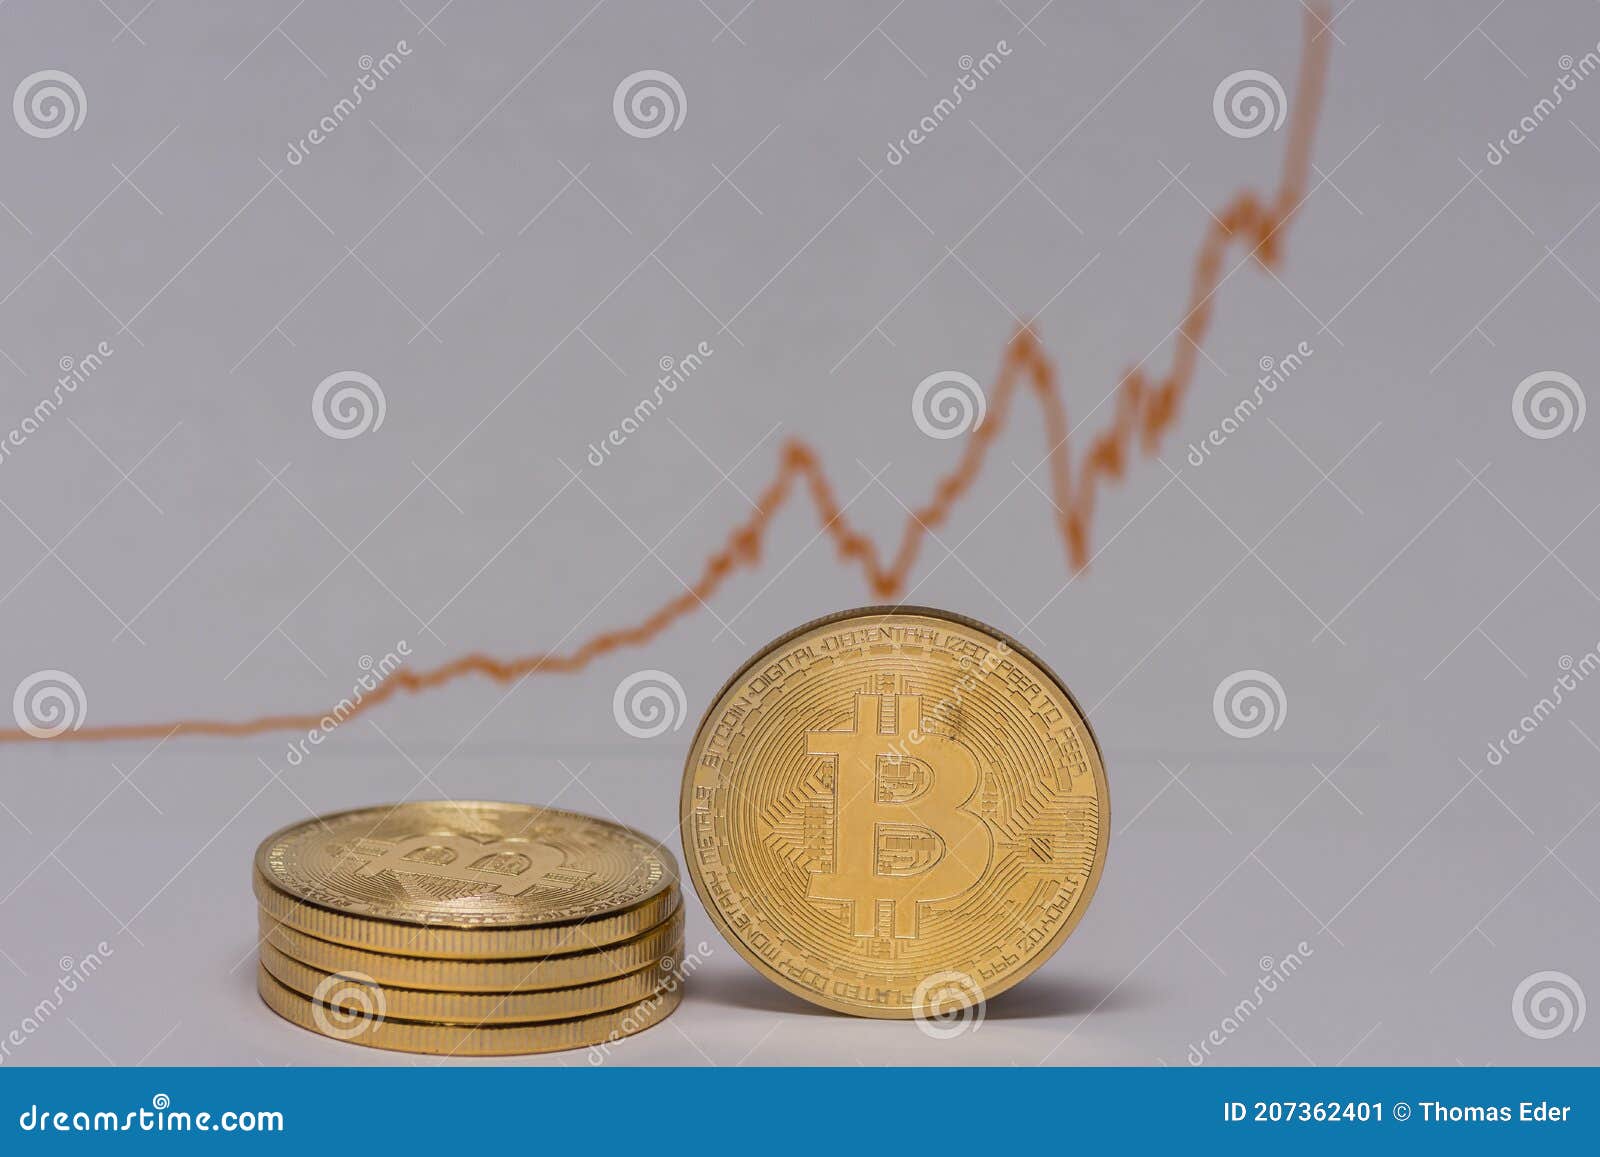 bitcoin pertas